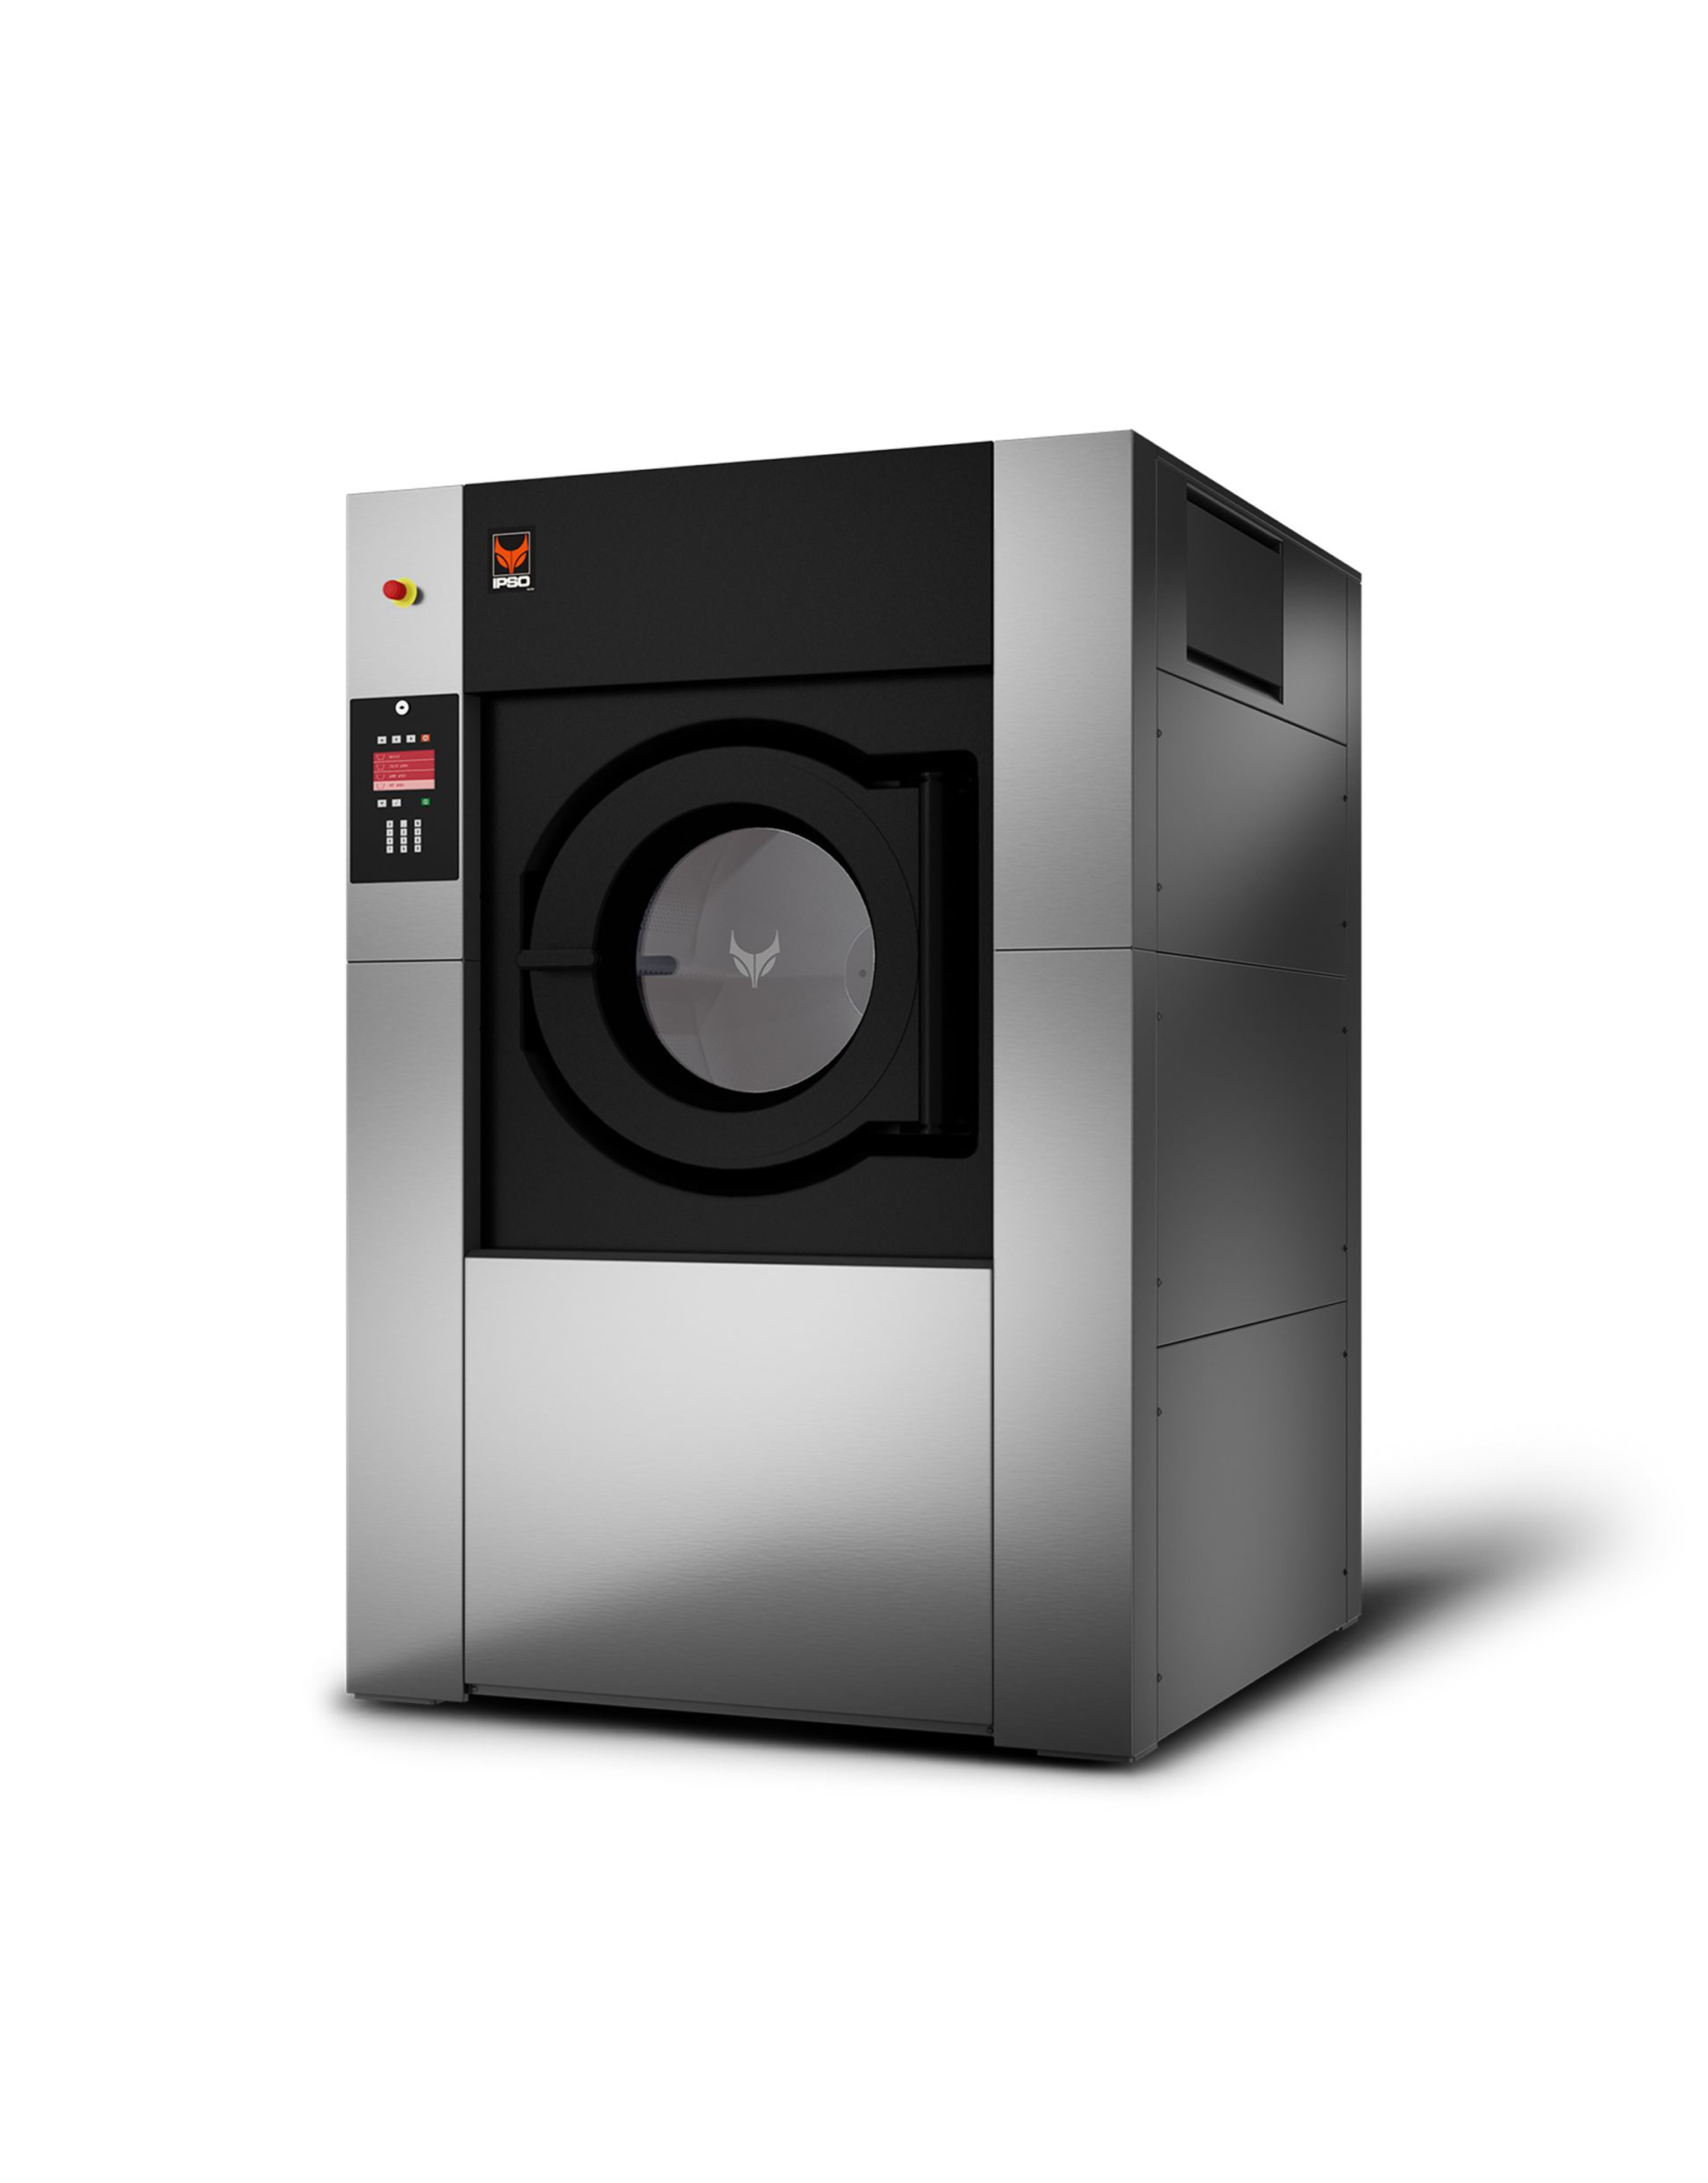 IY350 rechts industriele wasmachine machine à laver industriel 350 kilo kg industrial